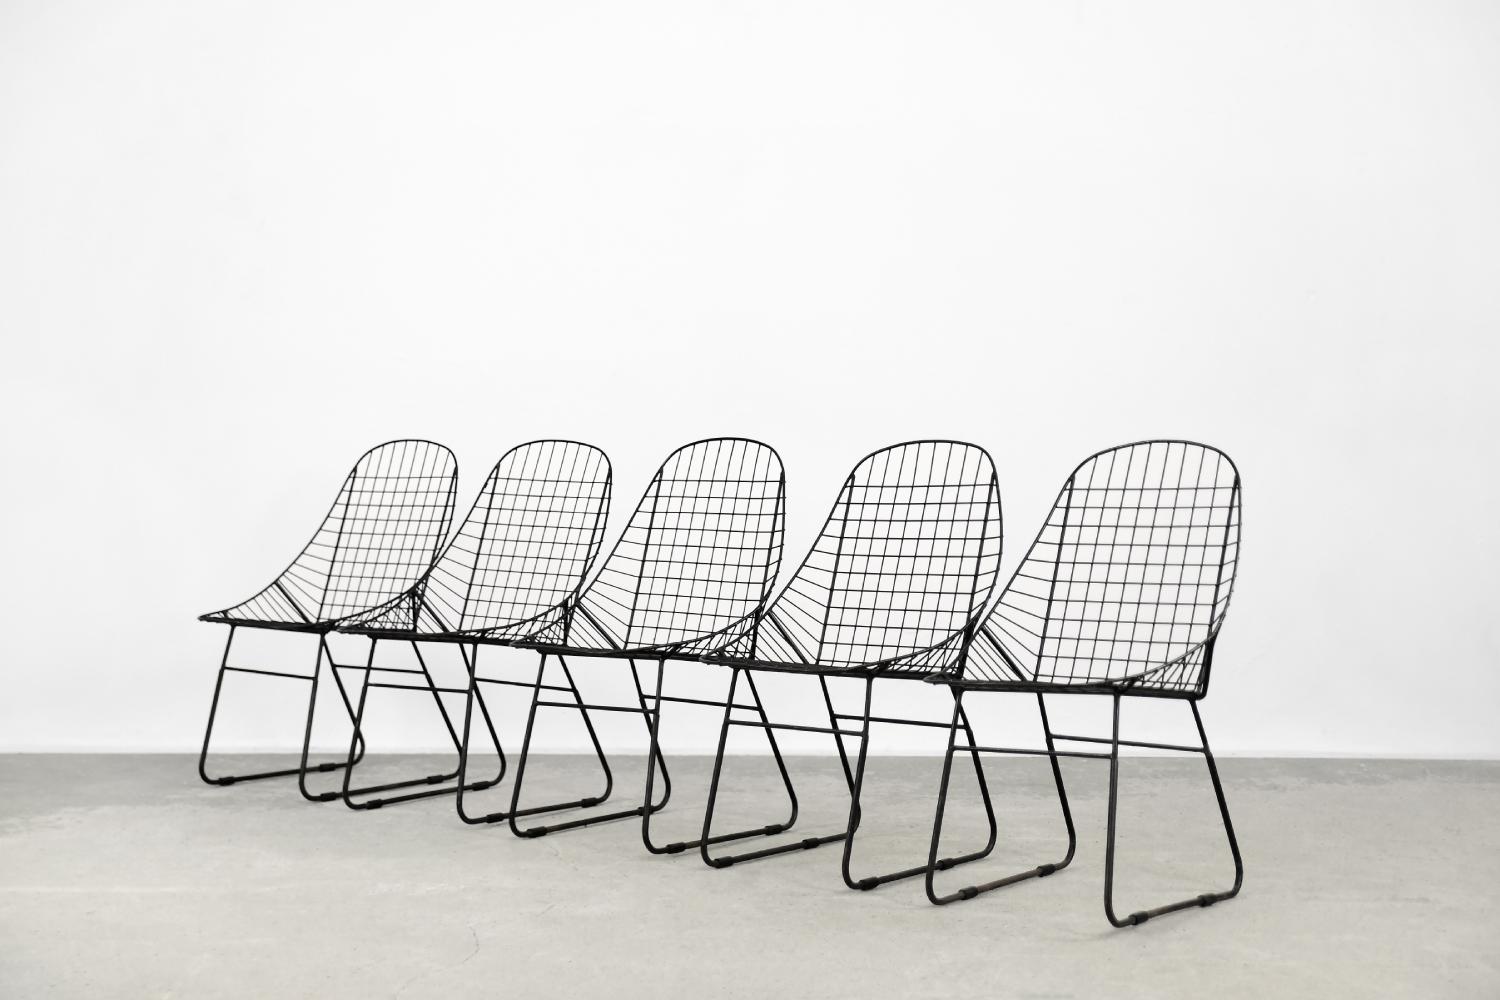 Cet ensemble de cinq chaises minimalistes a été conçu dans les années 1960. Il s'agit probablement d'un prototype fabriqué par une manufacture suédoise, et les chaises n'ont jamais été produites en série. Ils ont un cadre solide fait de fil